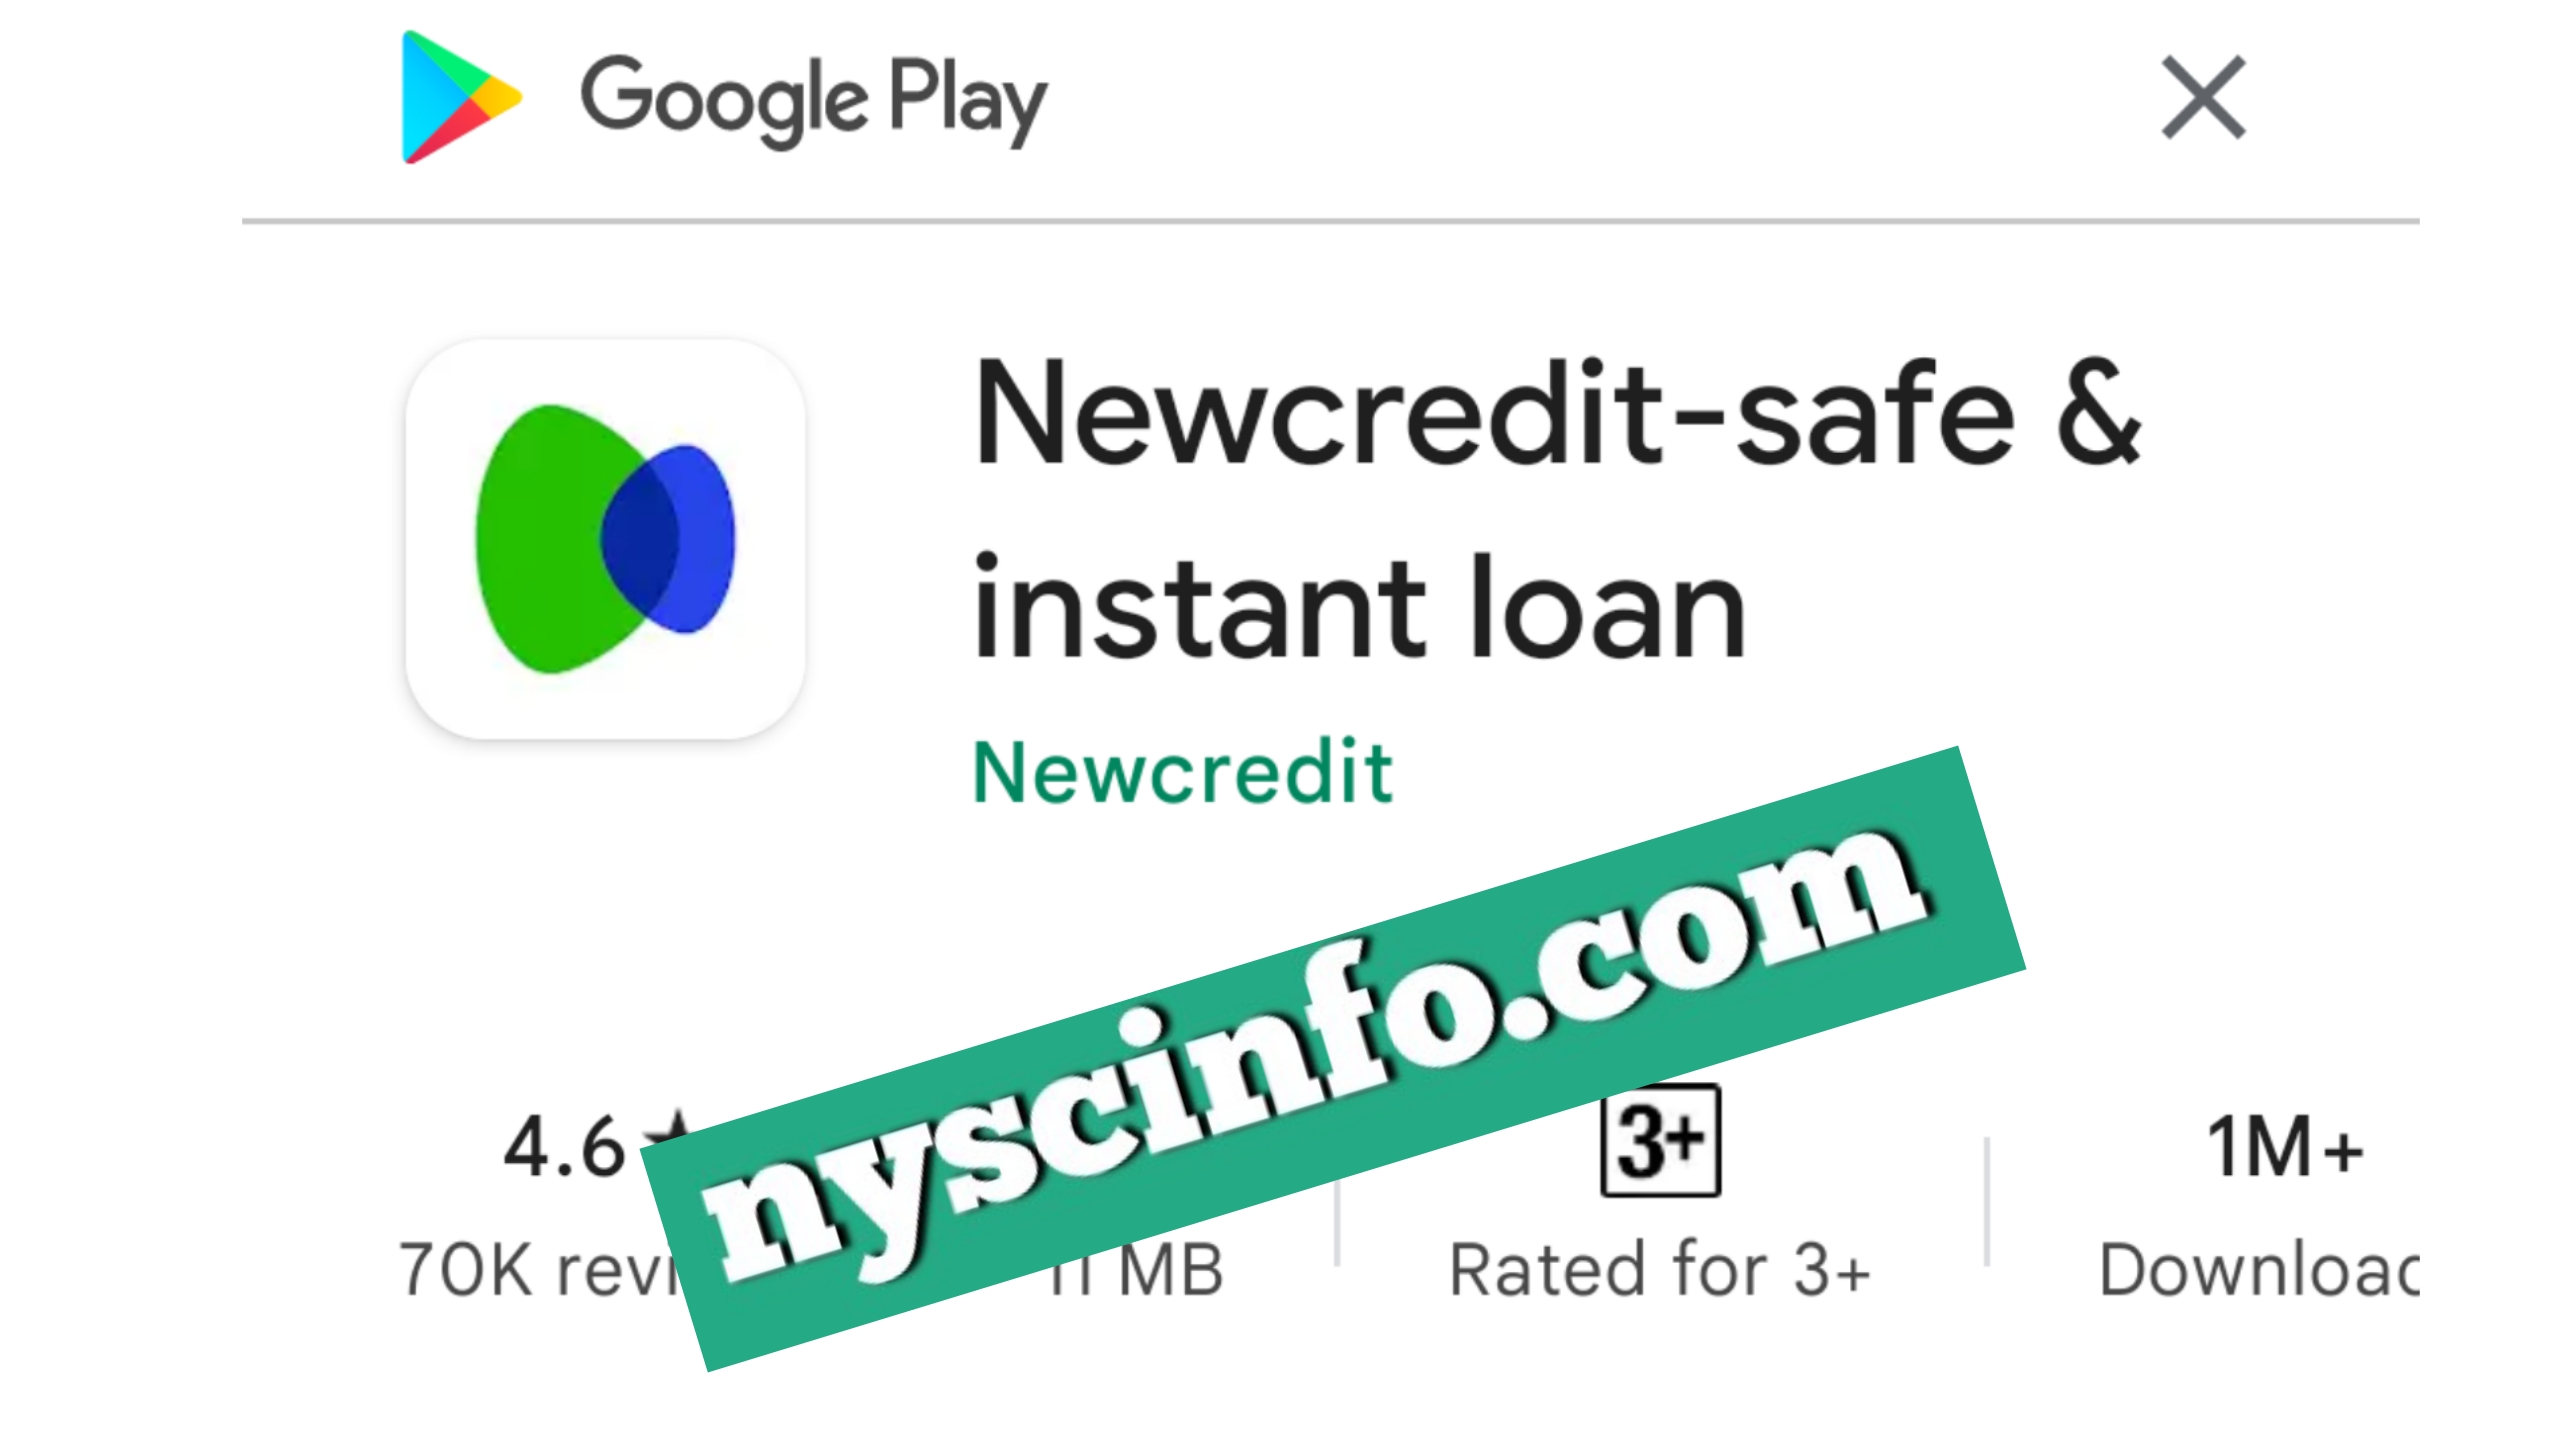 Nwcredit Loan